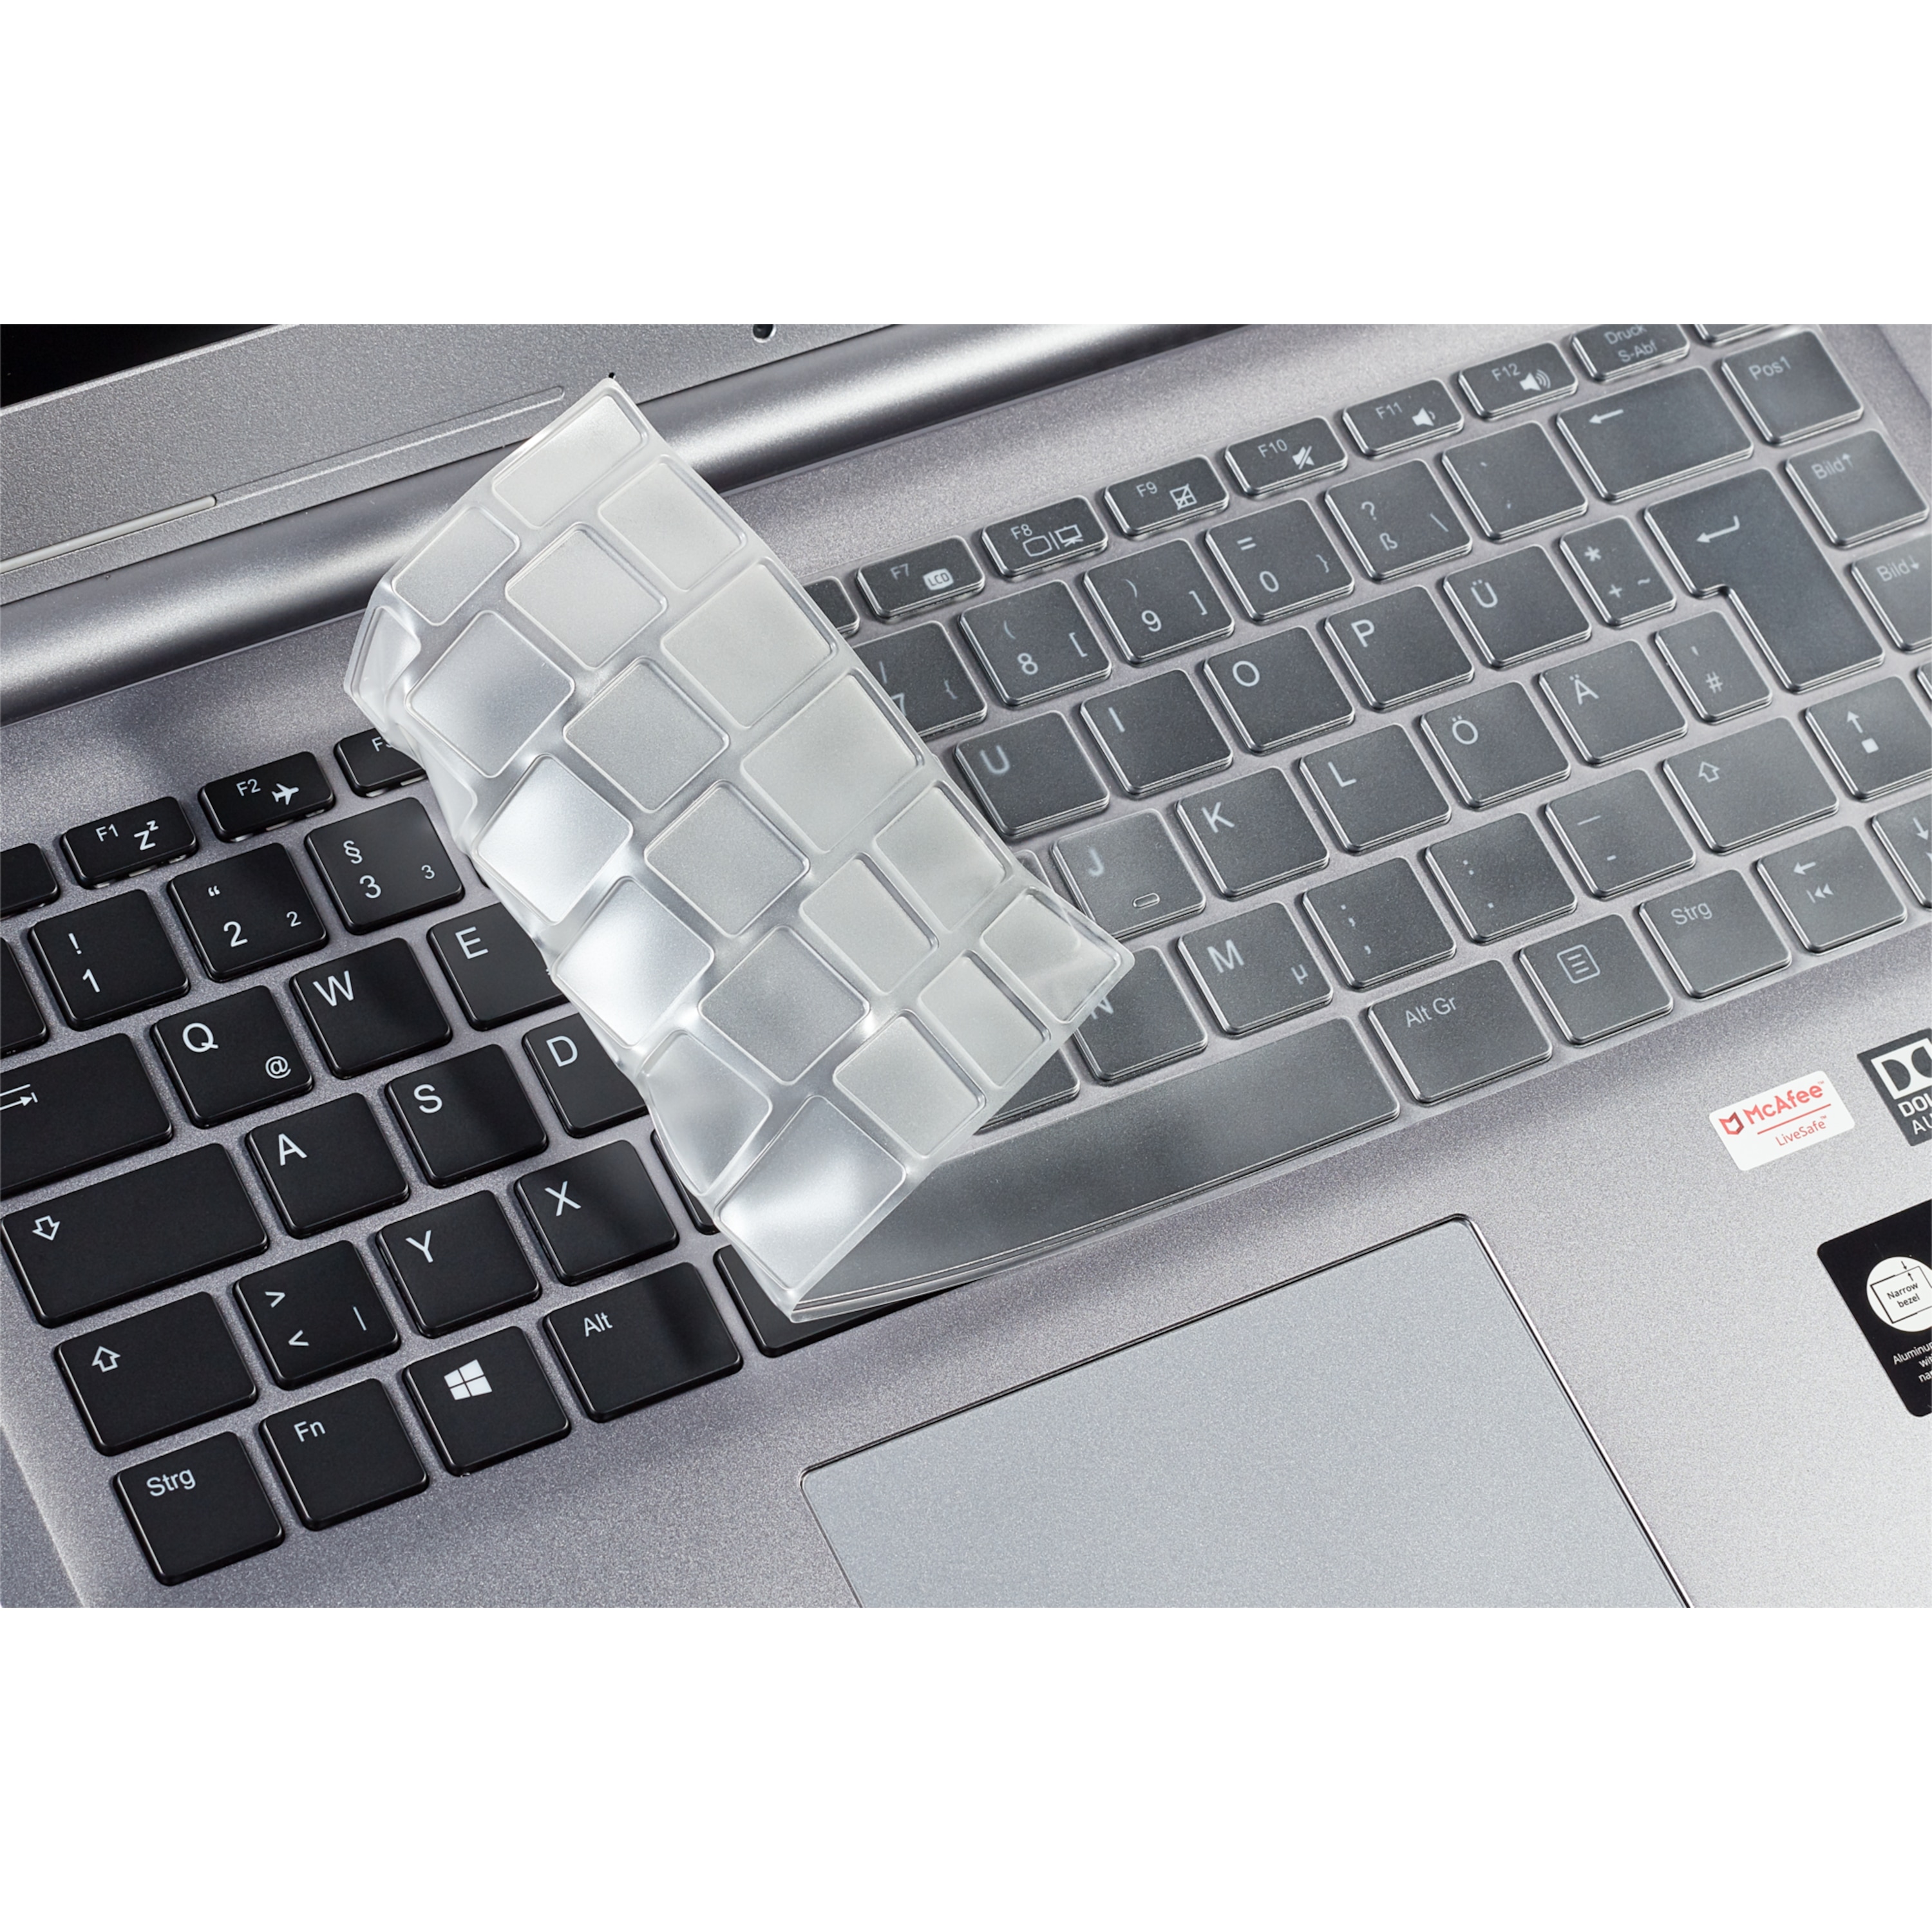 TPU Keyboard Cover MD 61099 | dun en transparant | bescherming tegen vuil, kruimels, stof en water